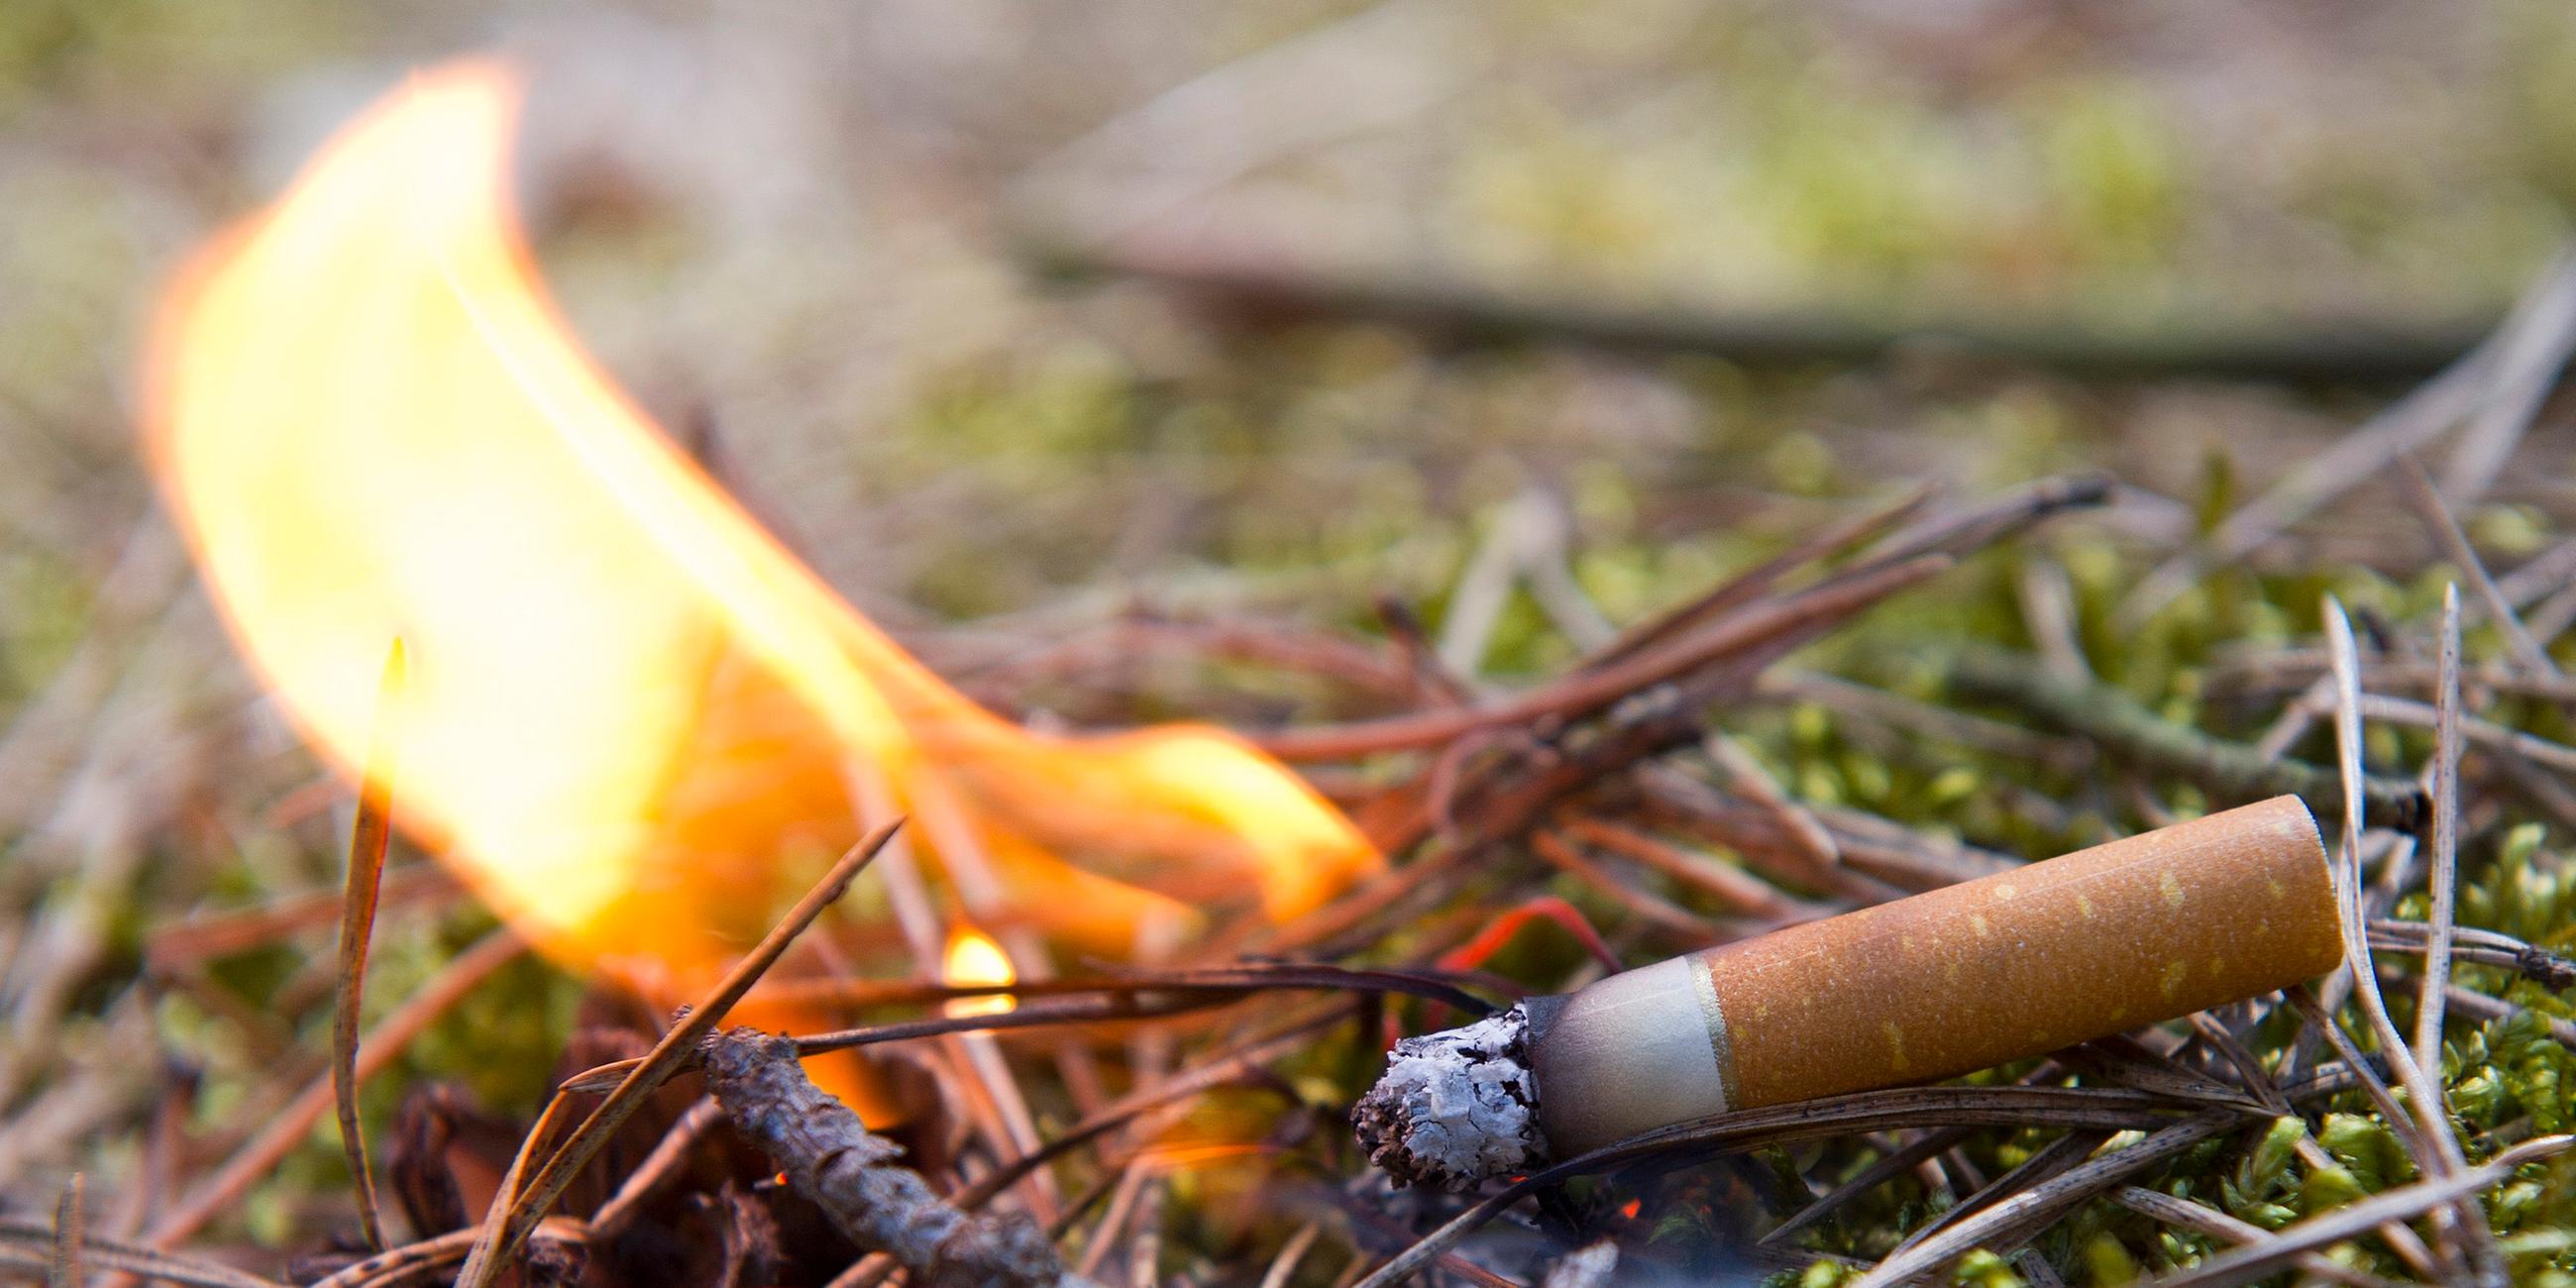 Zigarette auf trockenem Waldboden, Oberfläche fängt Feuer; Symbolbild